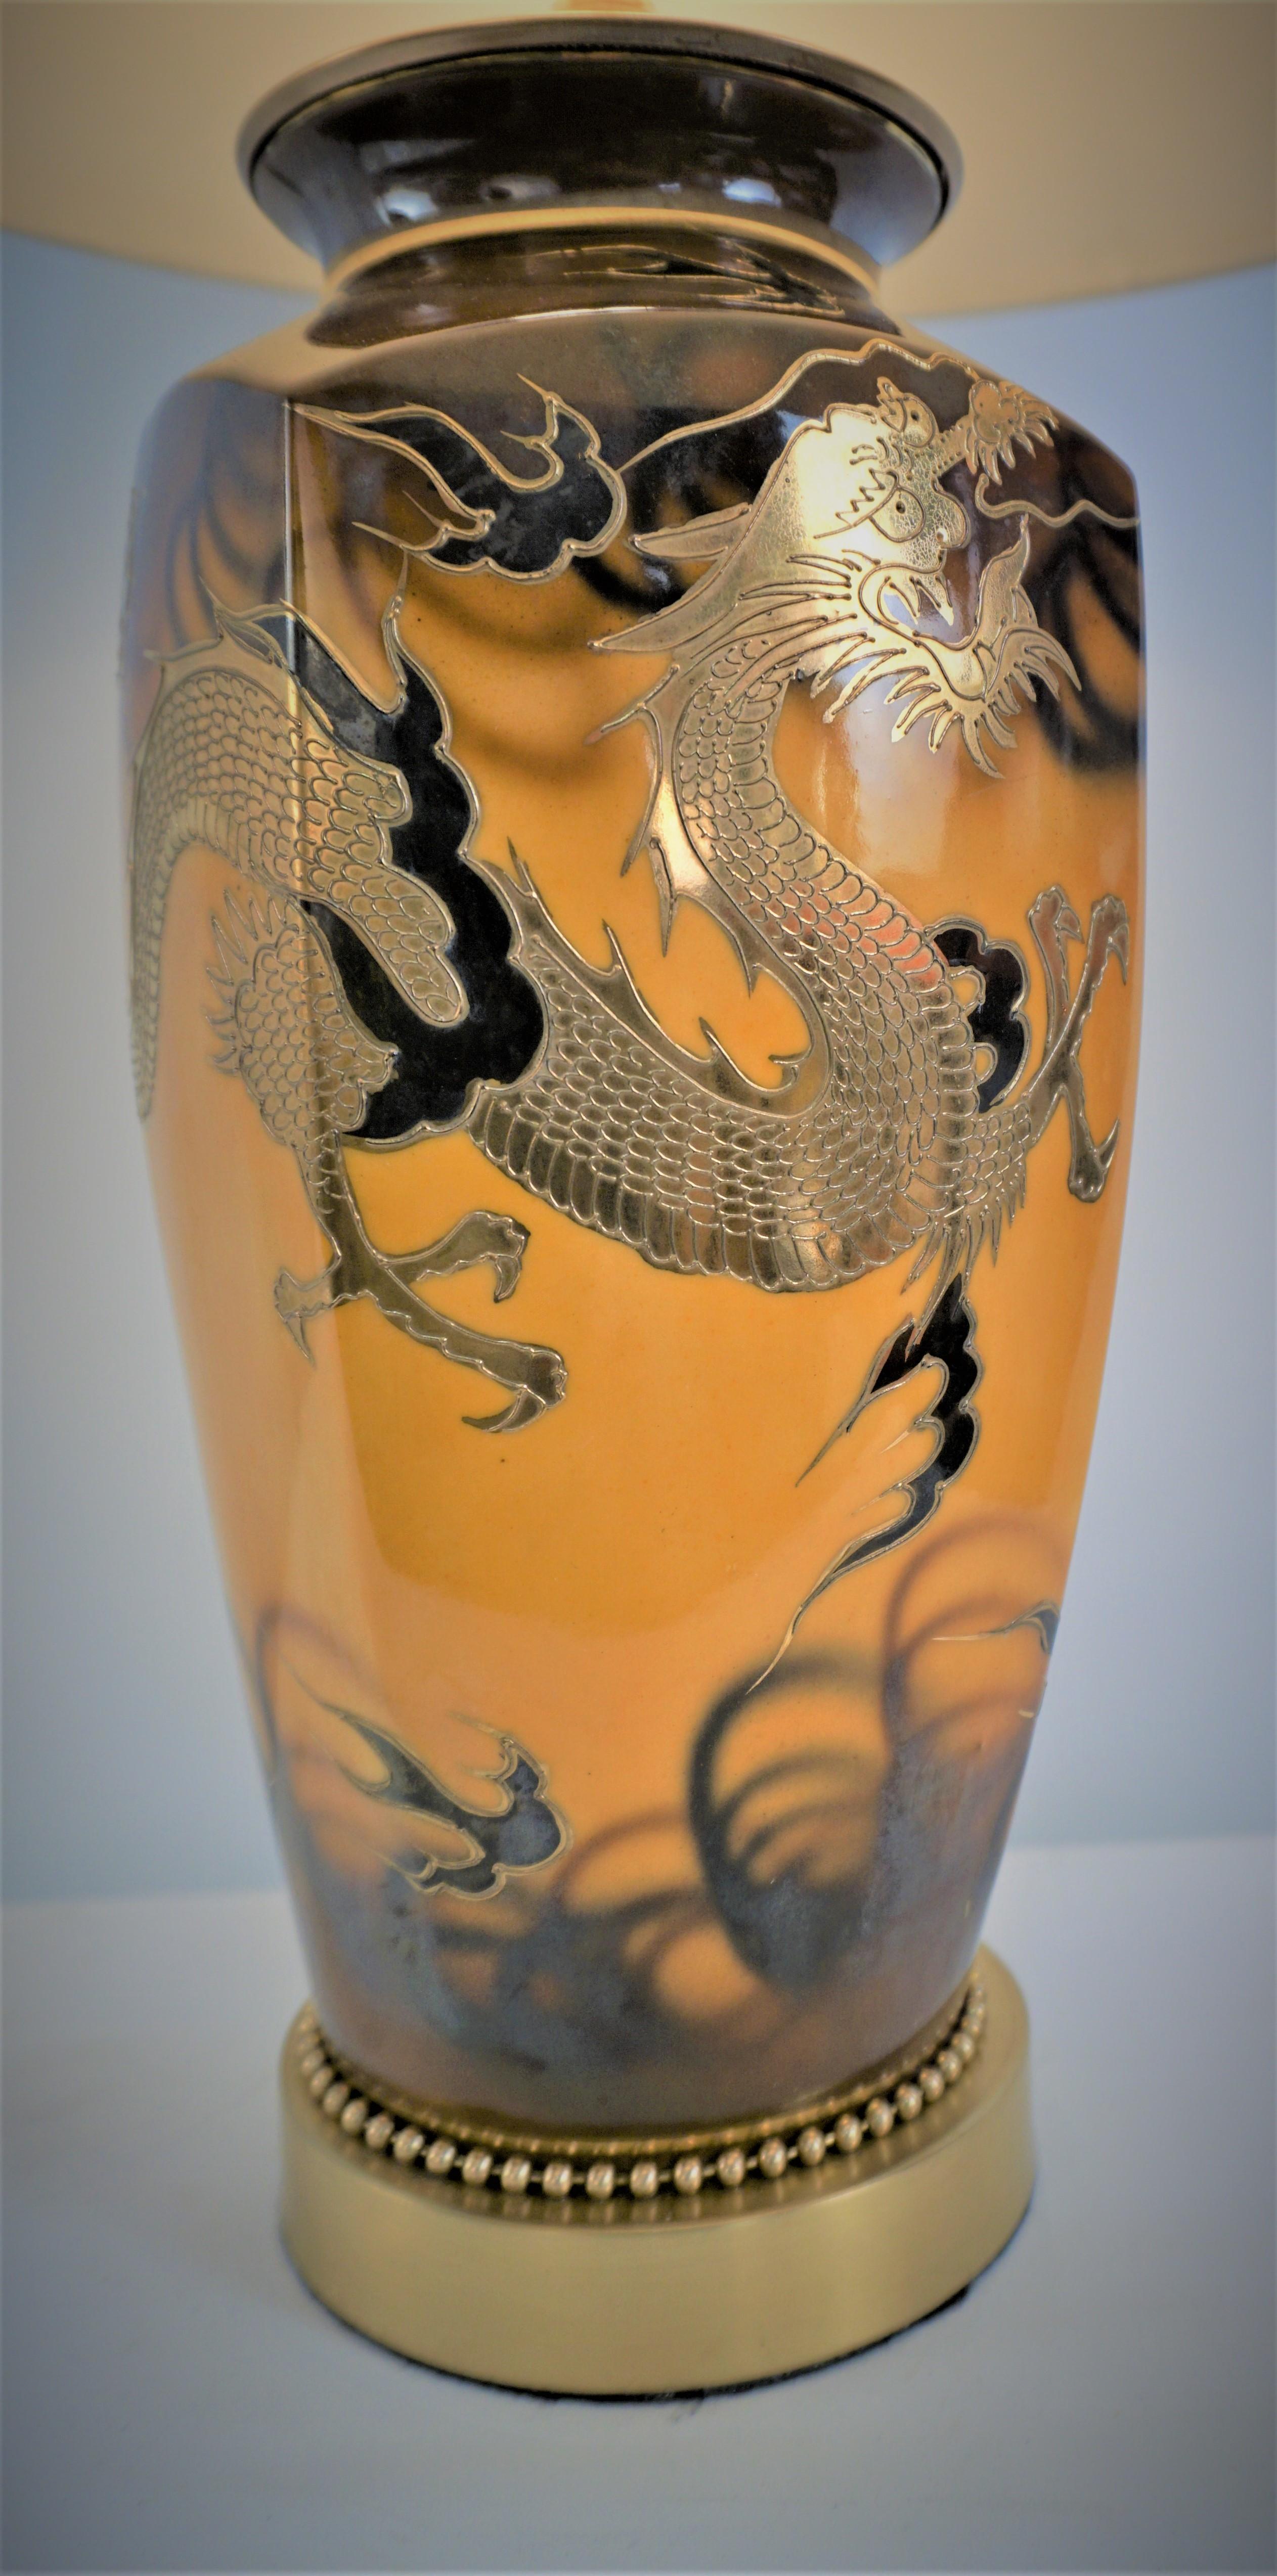 Lampe de table sur mesure en forme de vase à dragon doré, fabriquée au Japon à Satsuma, avec abat-jour en soie et fleuron en forme d'œil de tigre. 